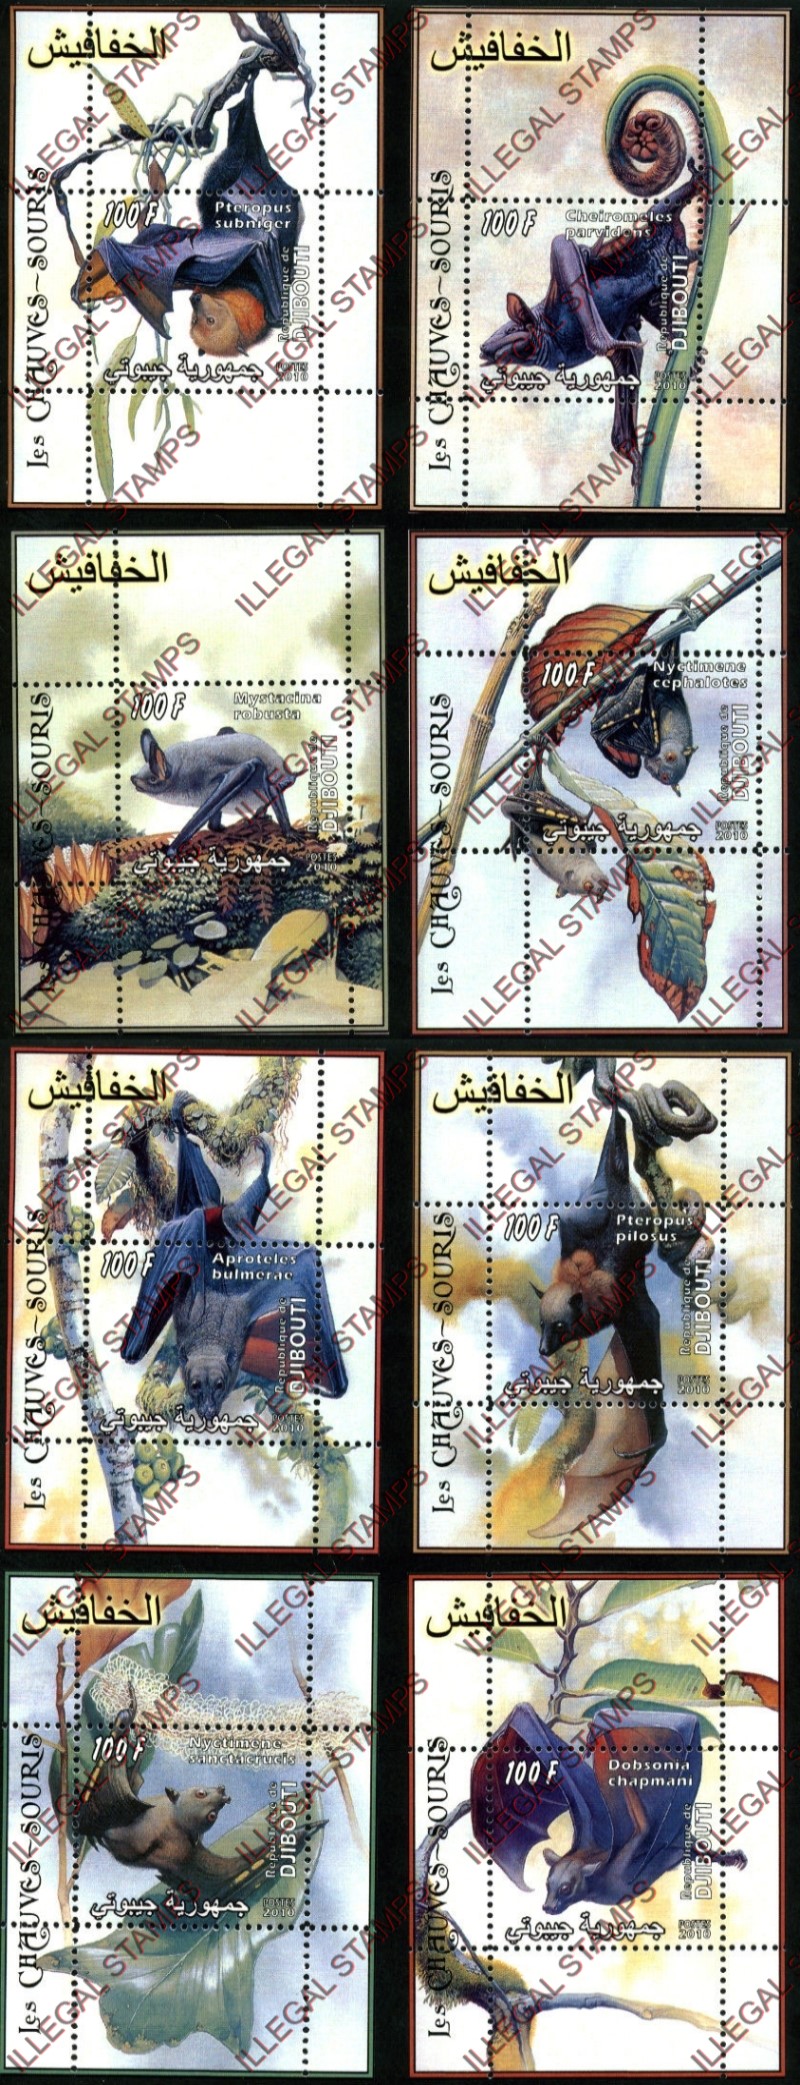 Djibouti 2010 Bats Illegal Stamp Souvenir Sheets of 1